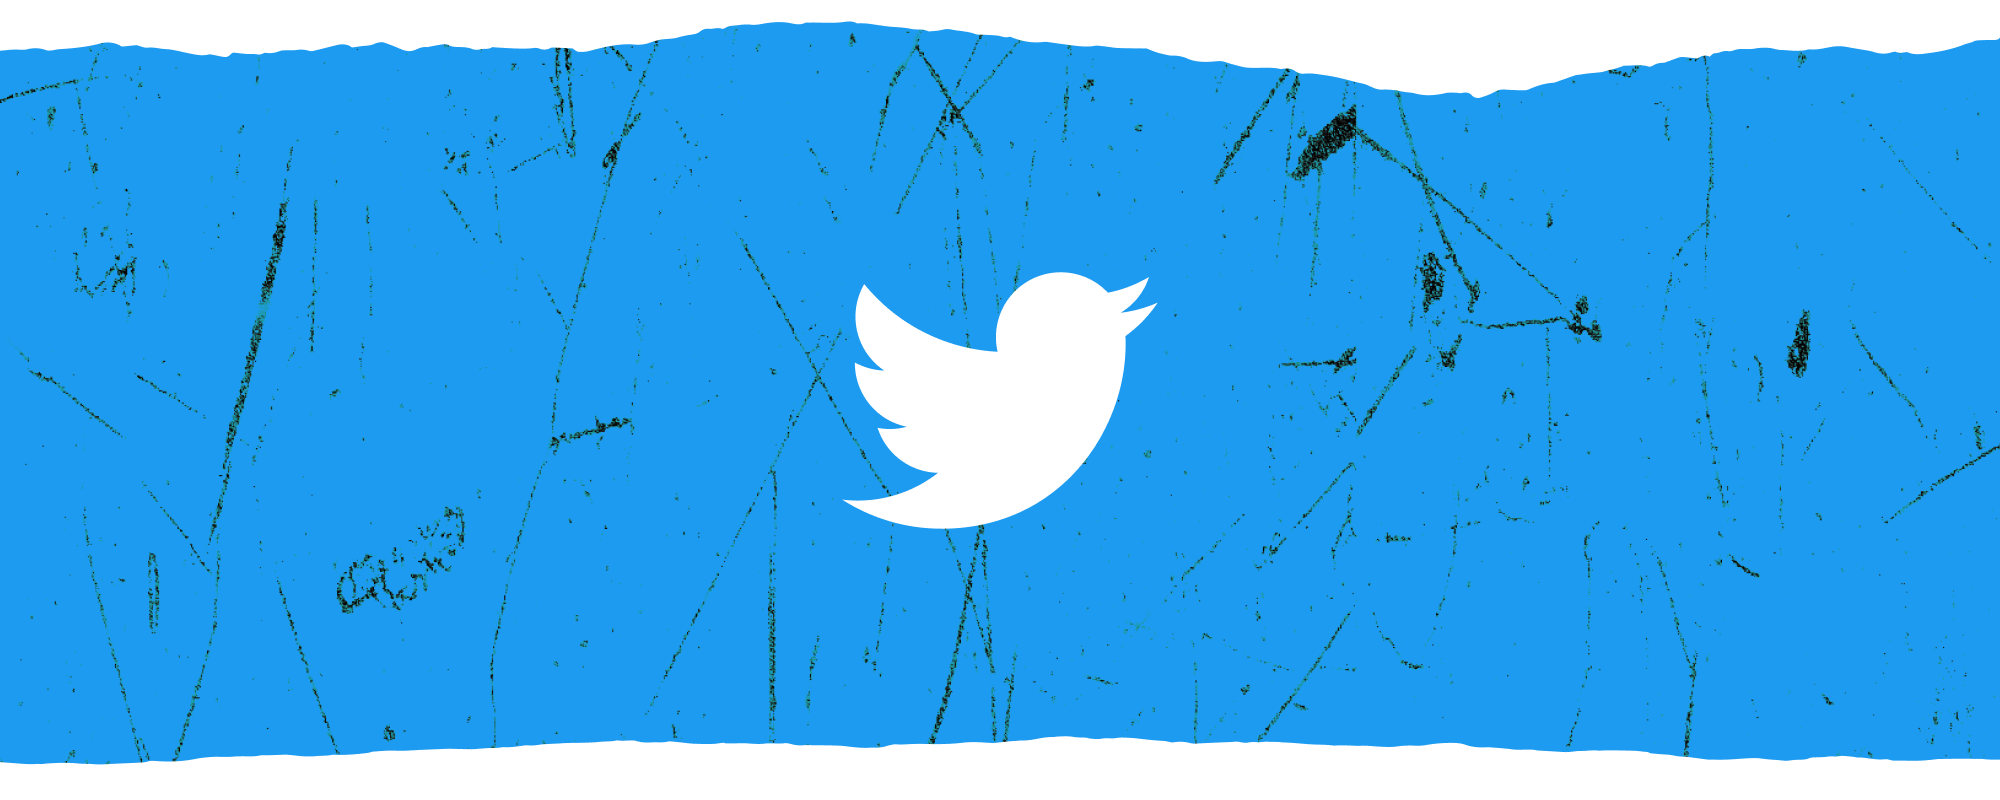 흰색 트위터 로고가 흰색에 오버레이 된 푸른 수평 배너 앞에있는 흰색 트위터 로고